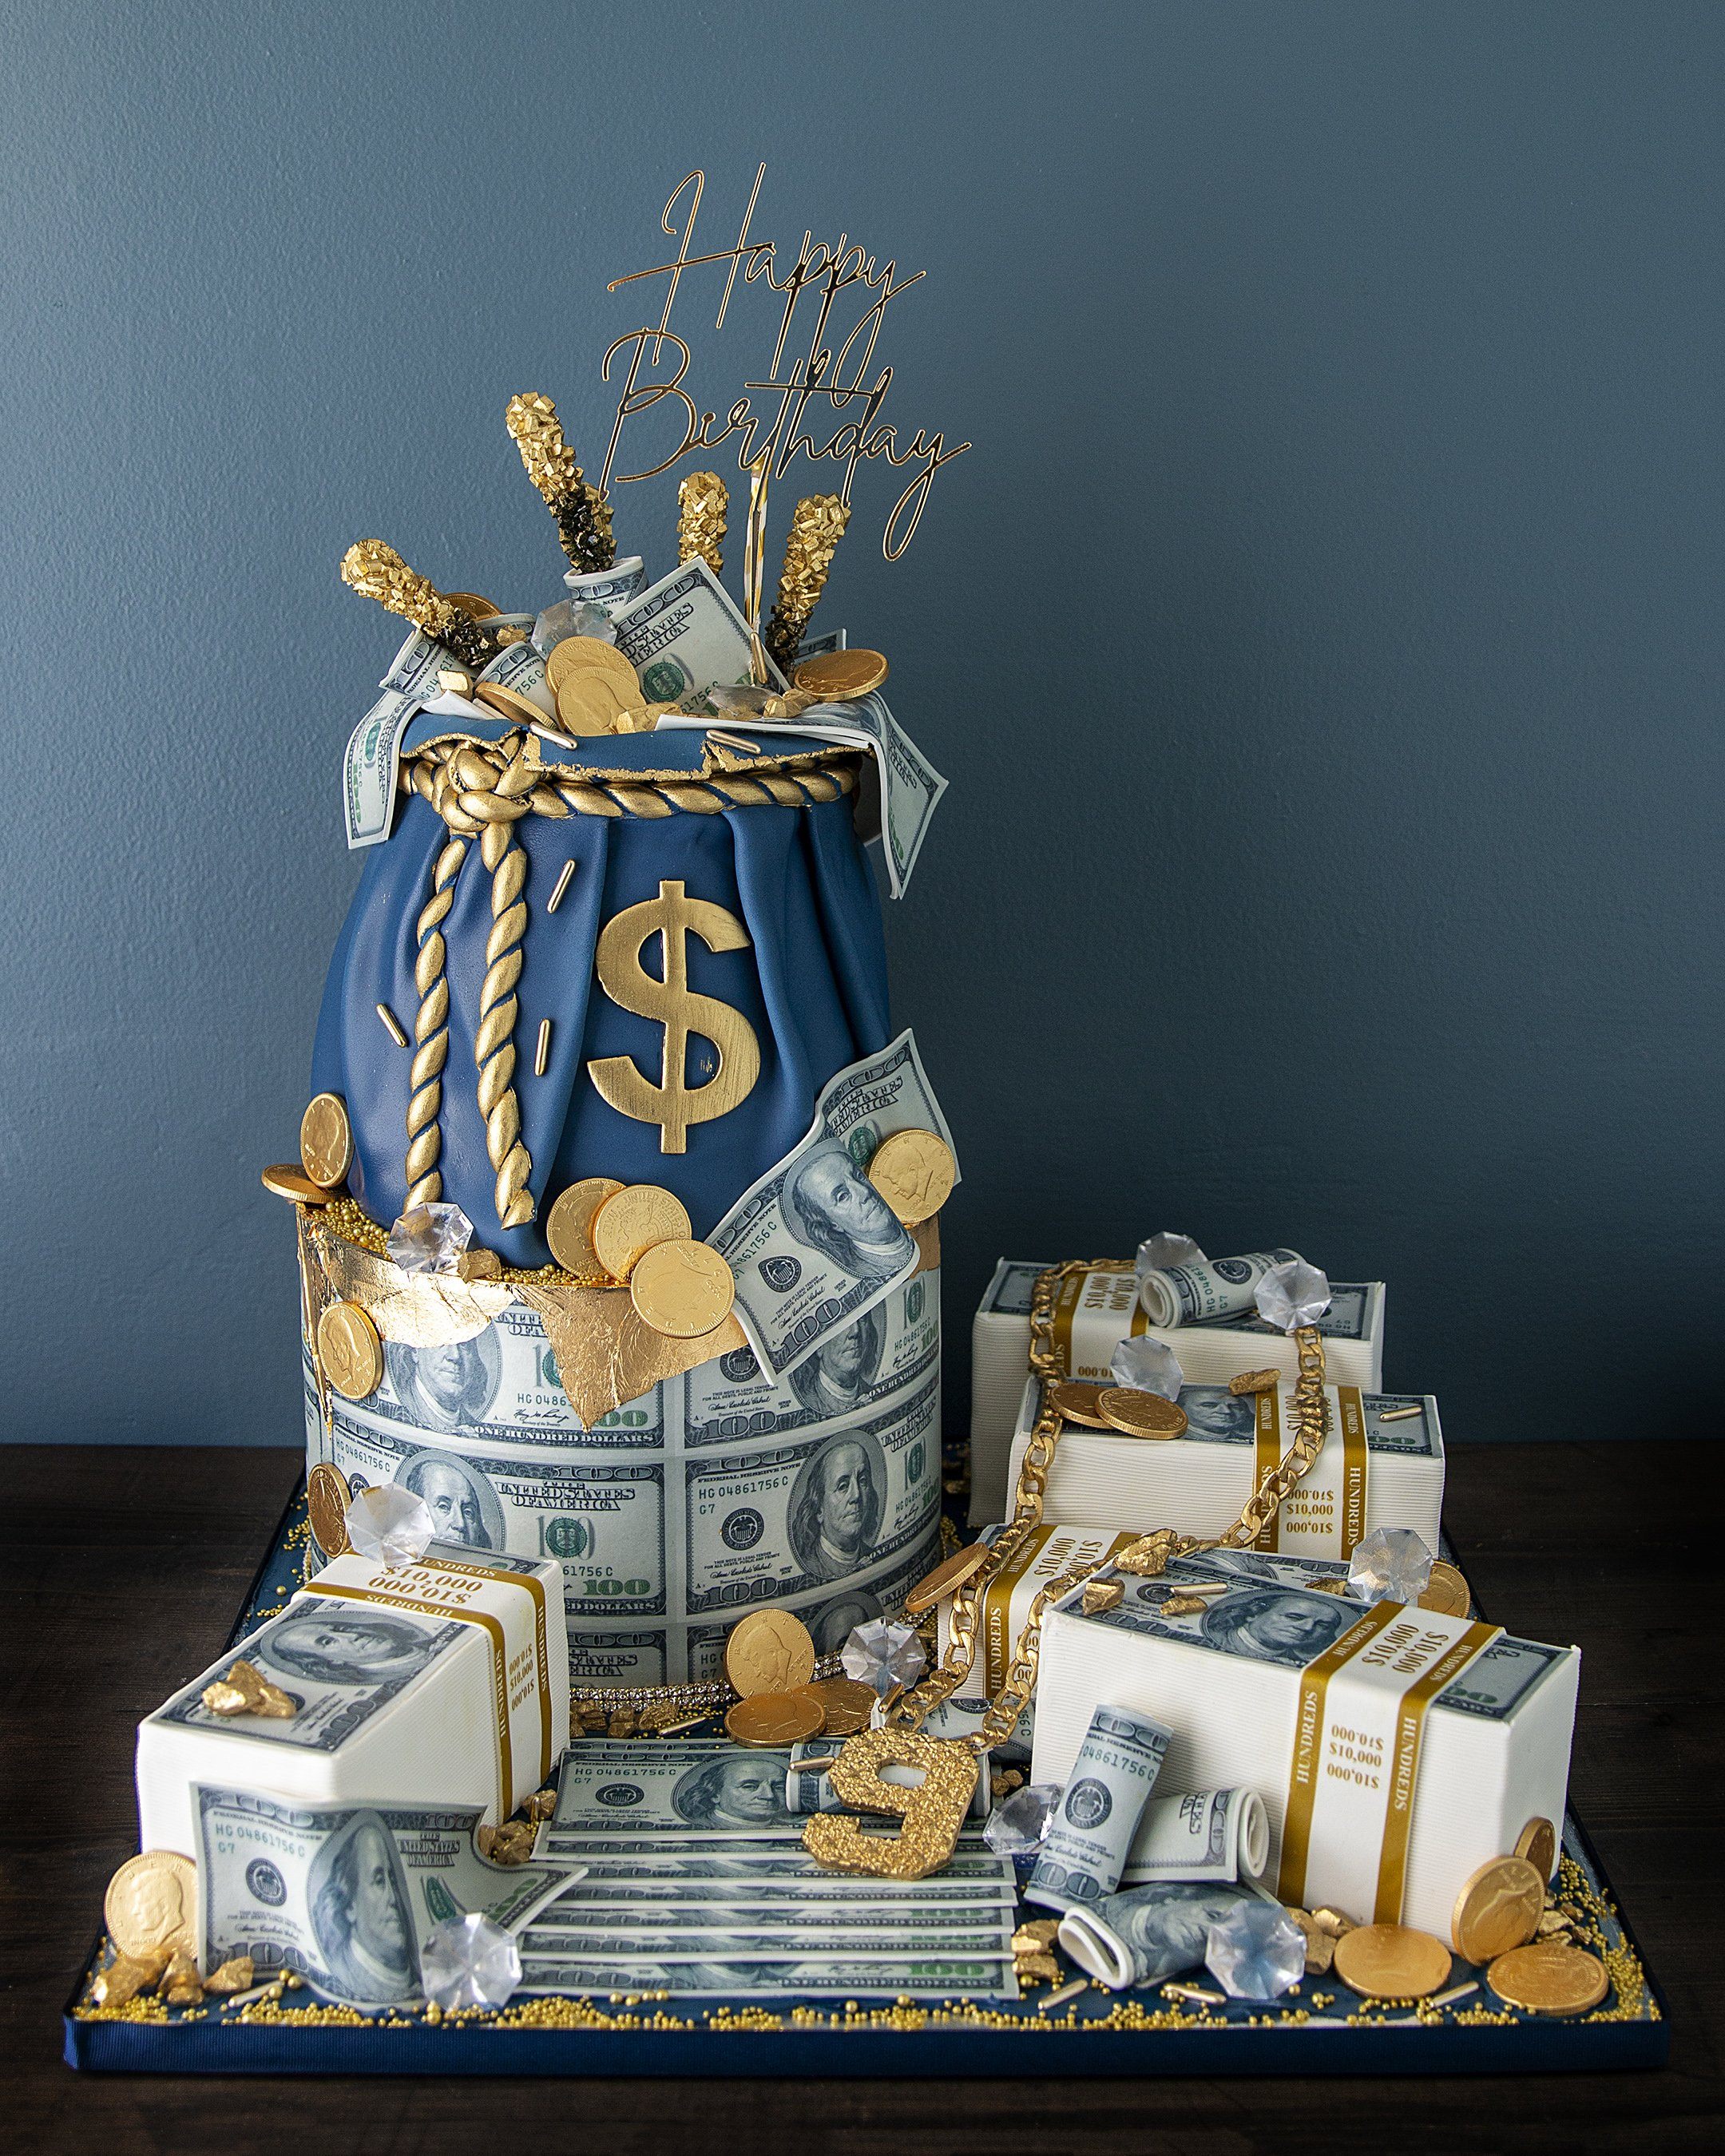 g-money-cake-elegant-temptations-bakery-261711.jpg